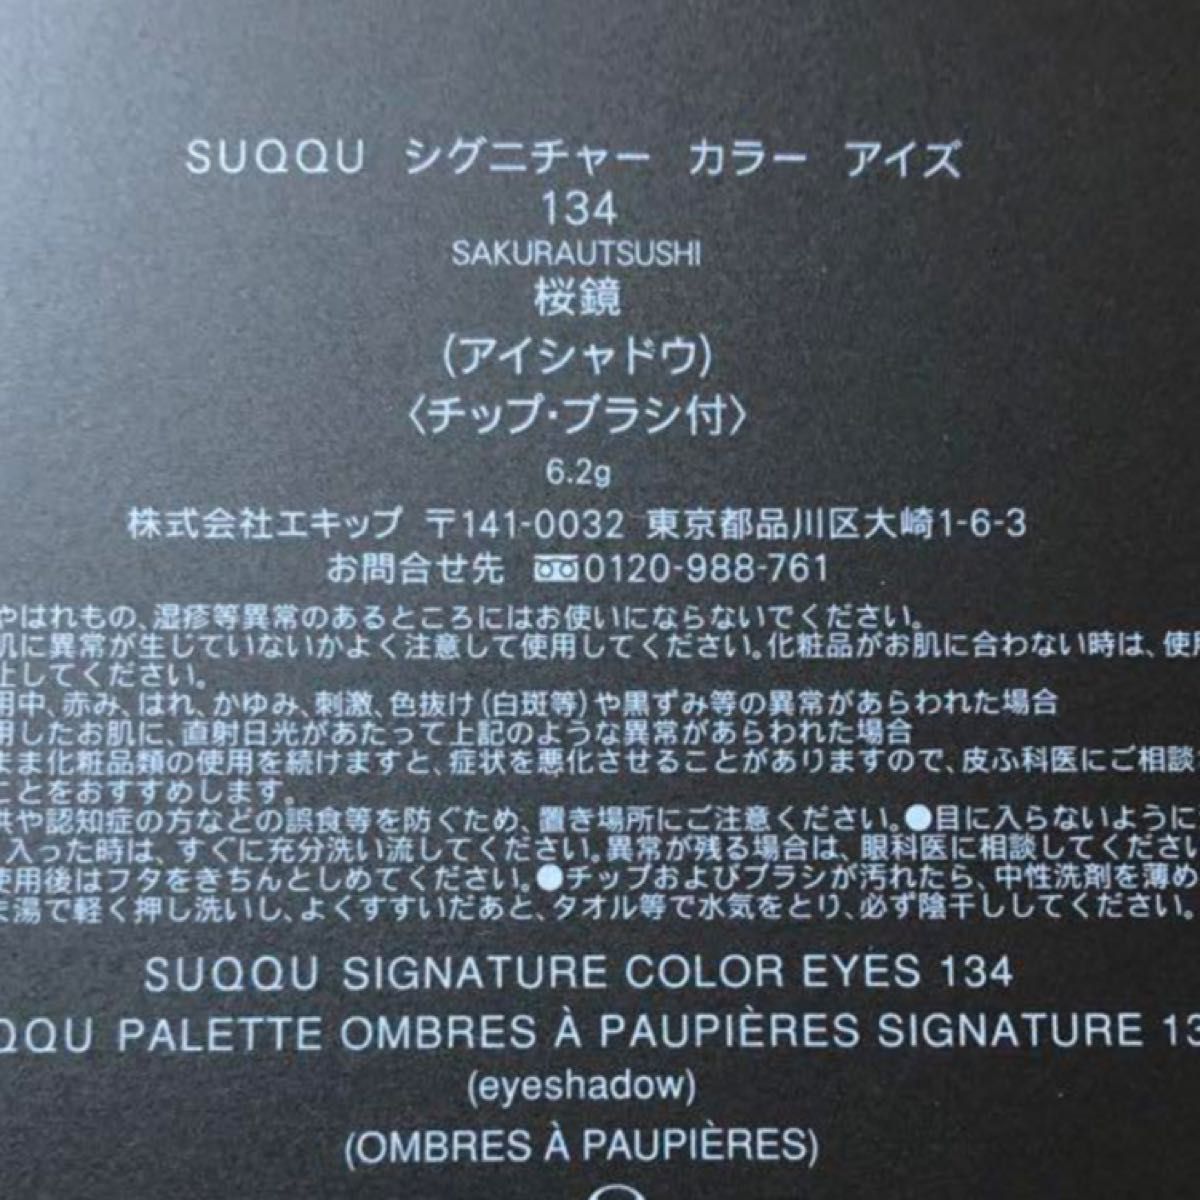 オリジナル商品 スック SUQQU シグニチャーカラーアイズ 134 桜